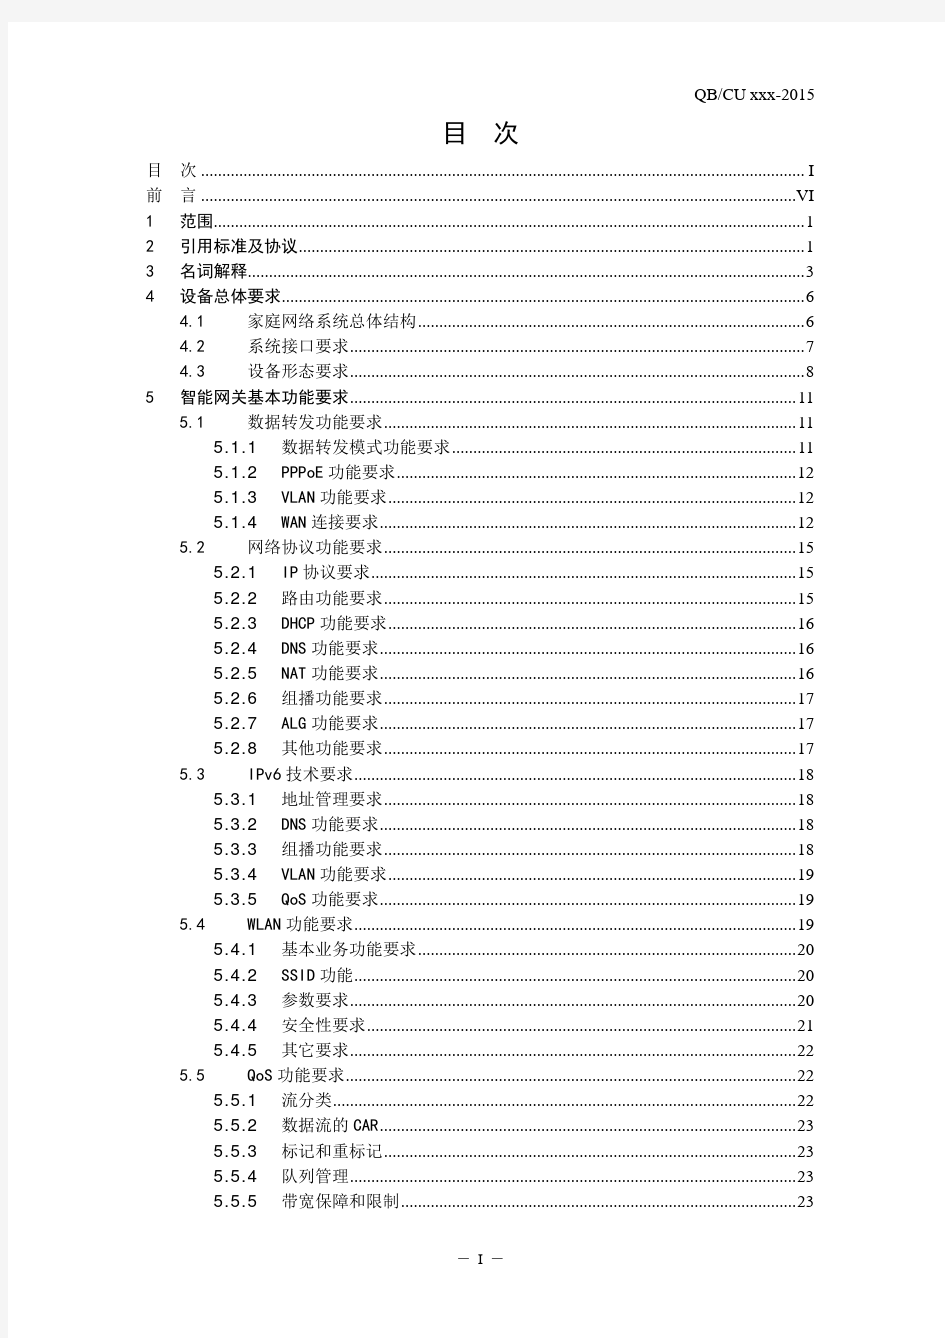 中国联通智慧沃家智能网关技术规范(v1.0_2015.2.9